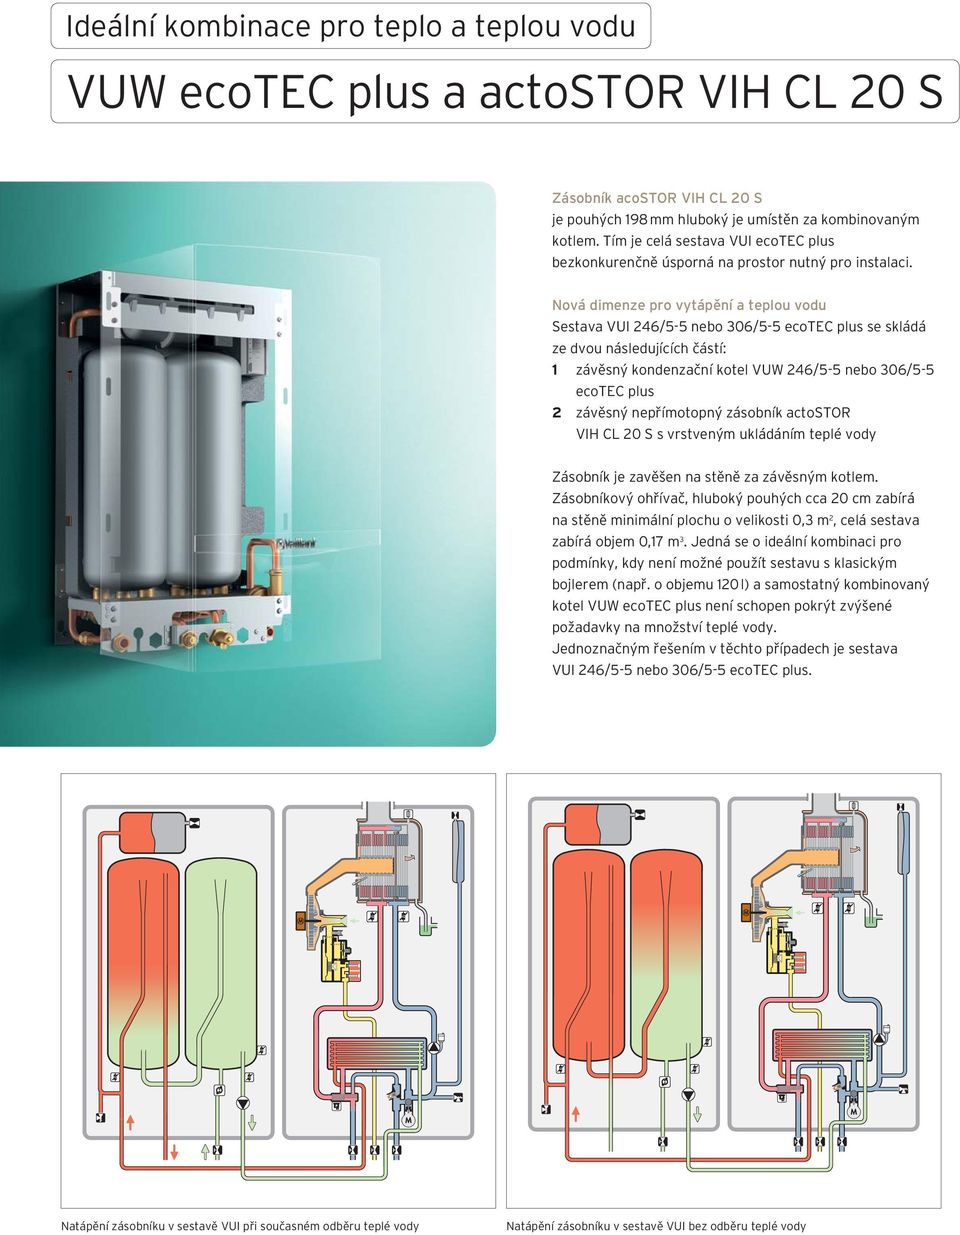 Nová dimenze pro vytápění a teplou vodu Sestava I 246/5-5 nebo 306/5-5 ecotec plus se skládá ze dvou následujících částí: 1 závěsný kondenzační kotel W 246/5-5 nebo 306/5-5 ecotec plus 2 závěsný